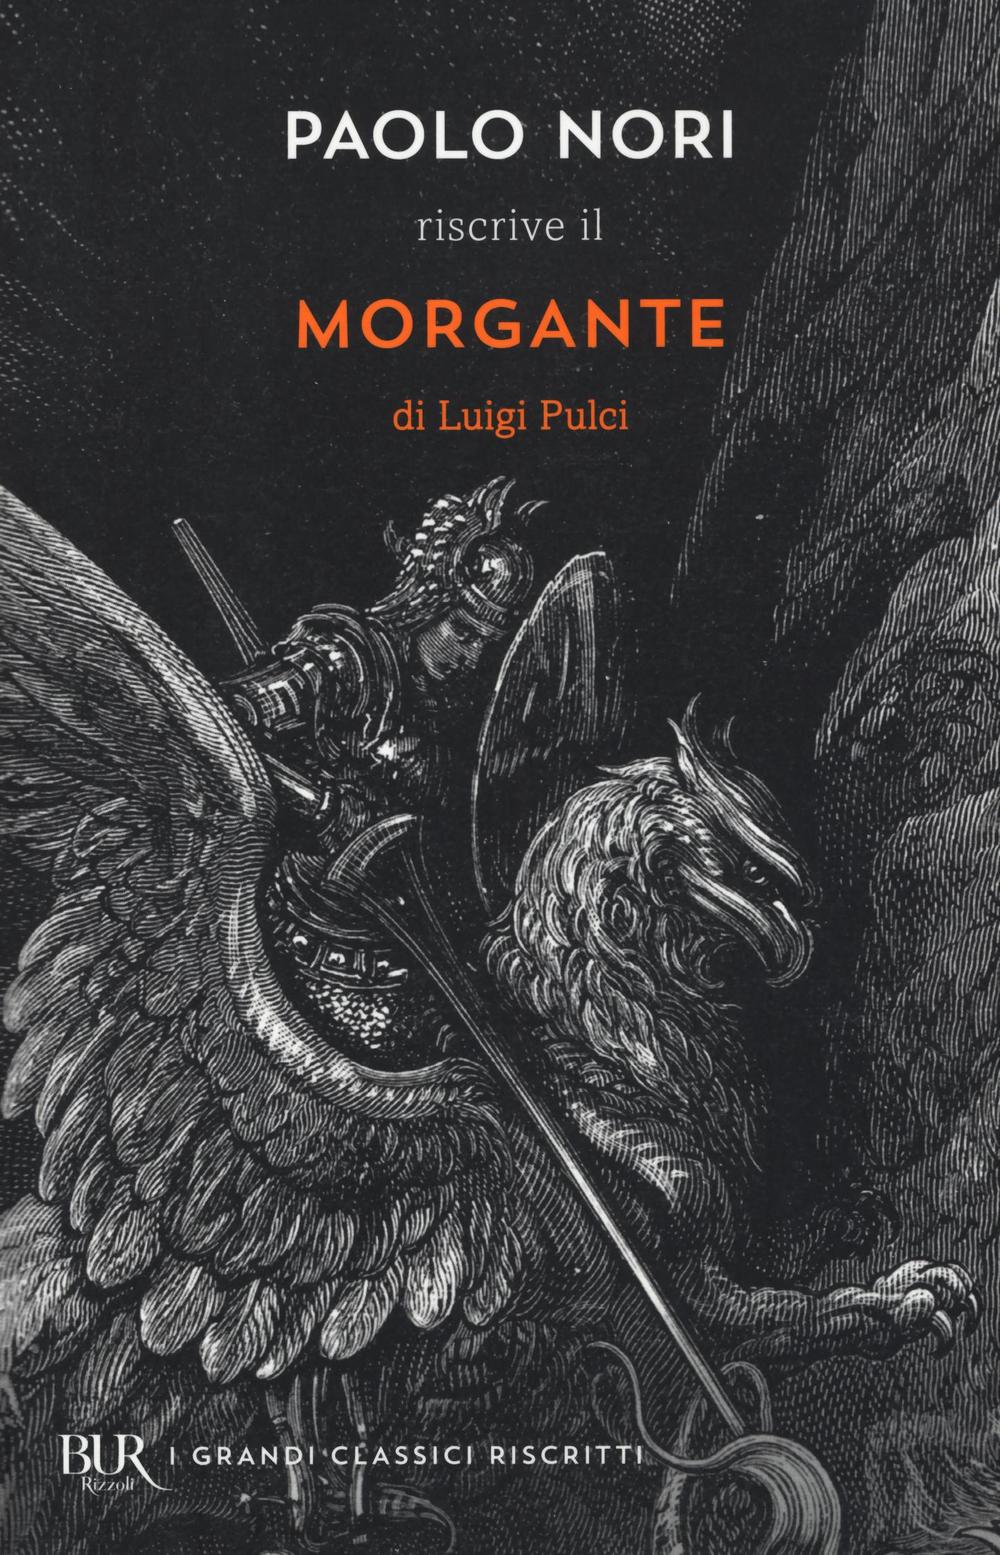 Paolo Nori riscrive «Morgante» di Luigi Pulci